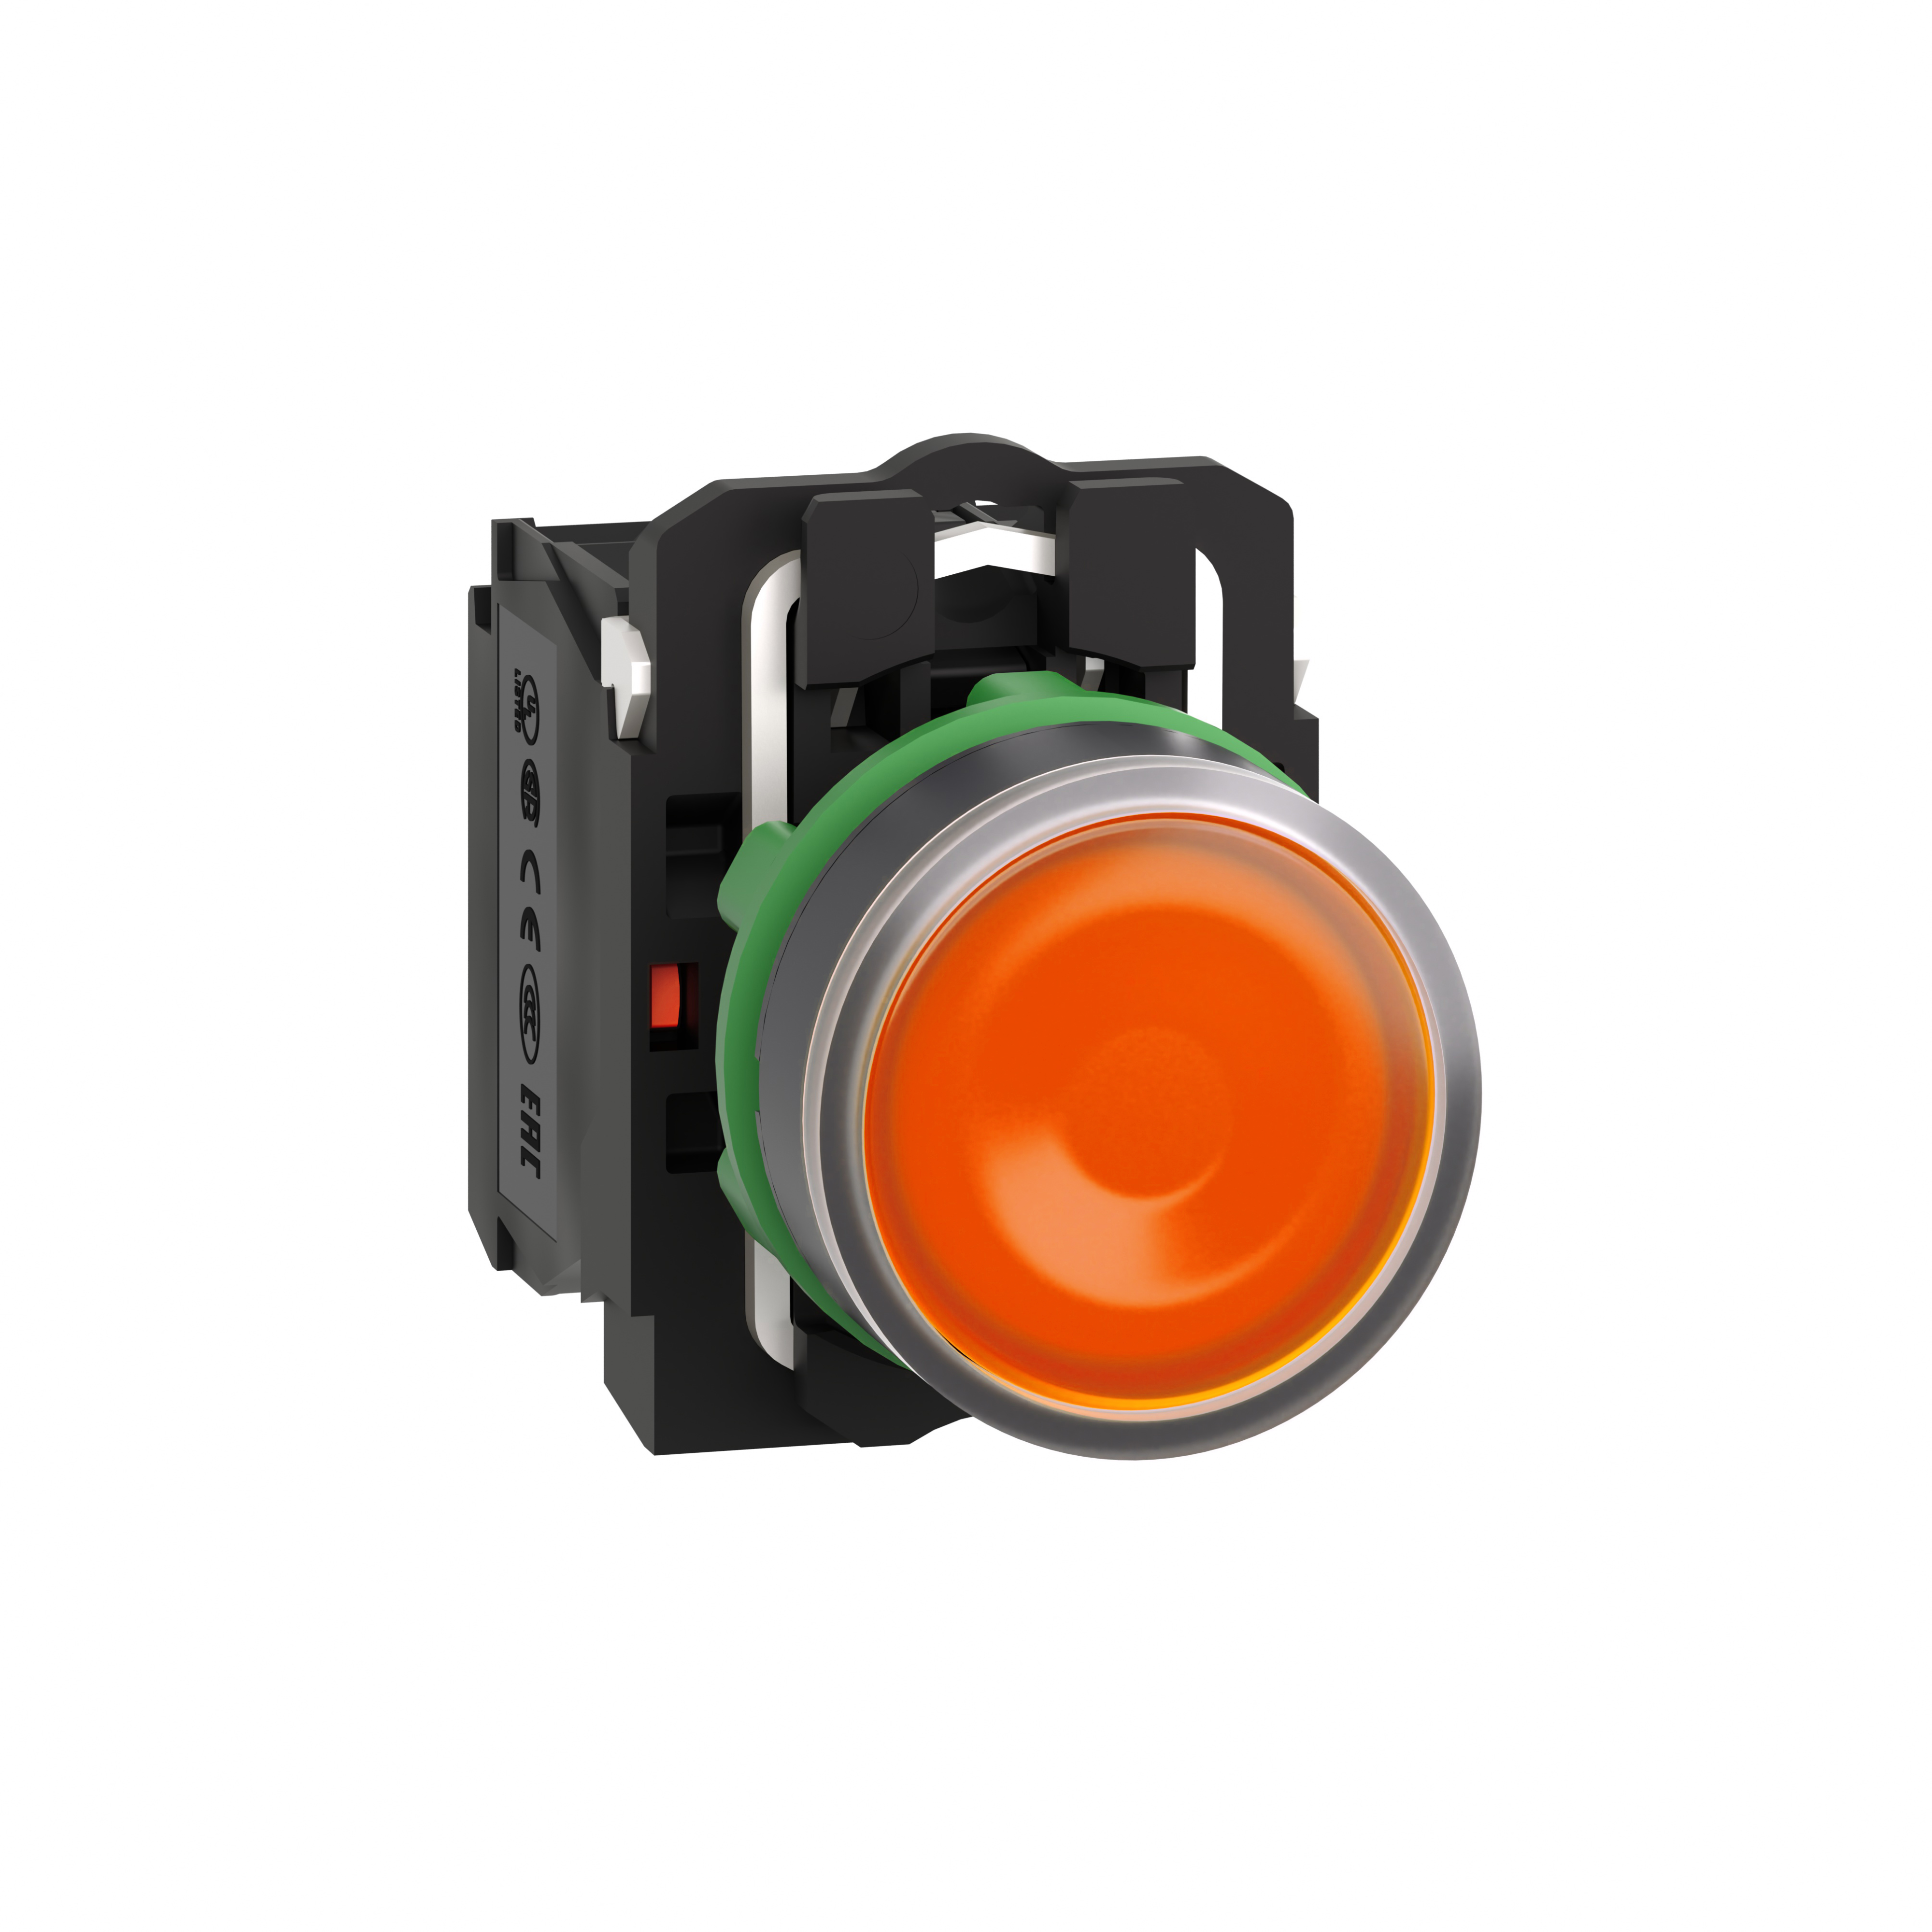 Illuminated push button, Harmony XB5, plastic, orange flush, 22mm, universal LED, plain lens, 1NO + 1NC, 24V AC DC